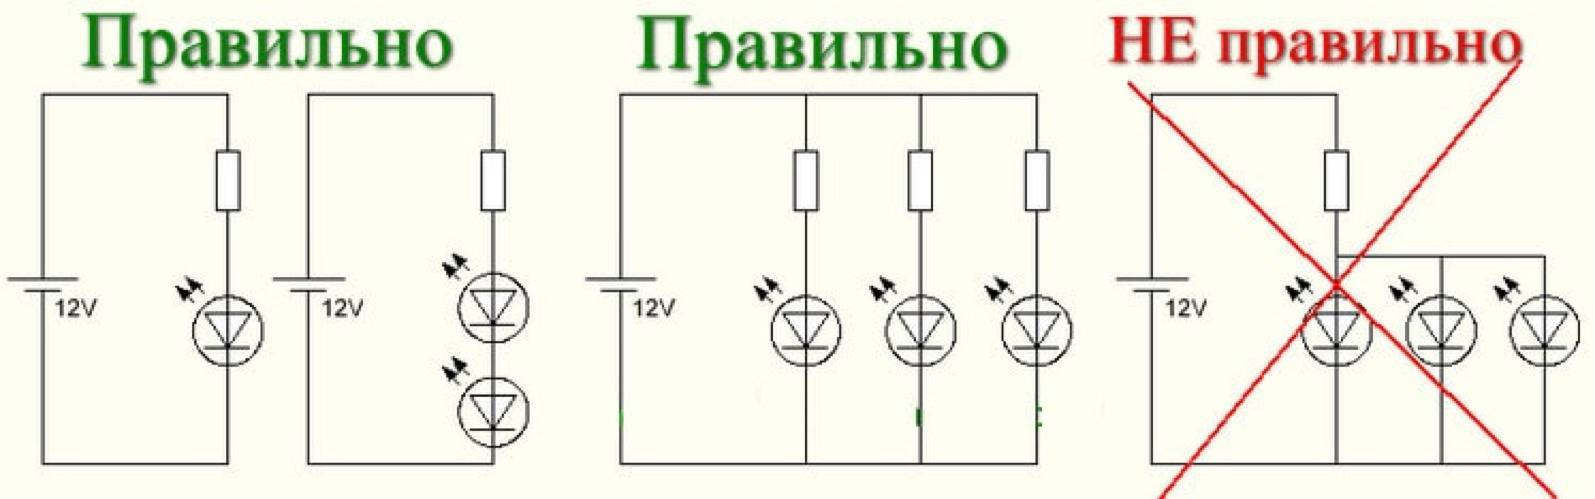 Какие схемы неправильны. Схема подключения диода через резистор. Схема подключения сопротивления для светодиода. Схема диод резистор параллельное соединение. Схема подключения светодиодов 3w к 12 вольтам.